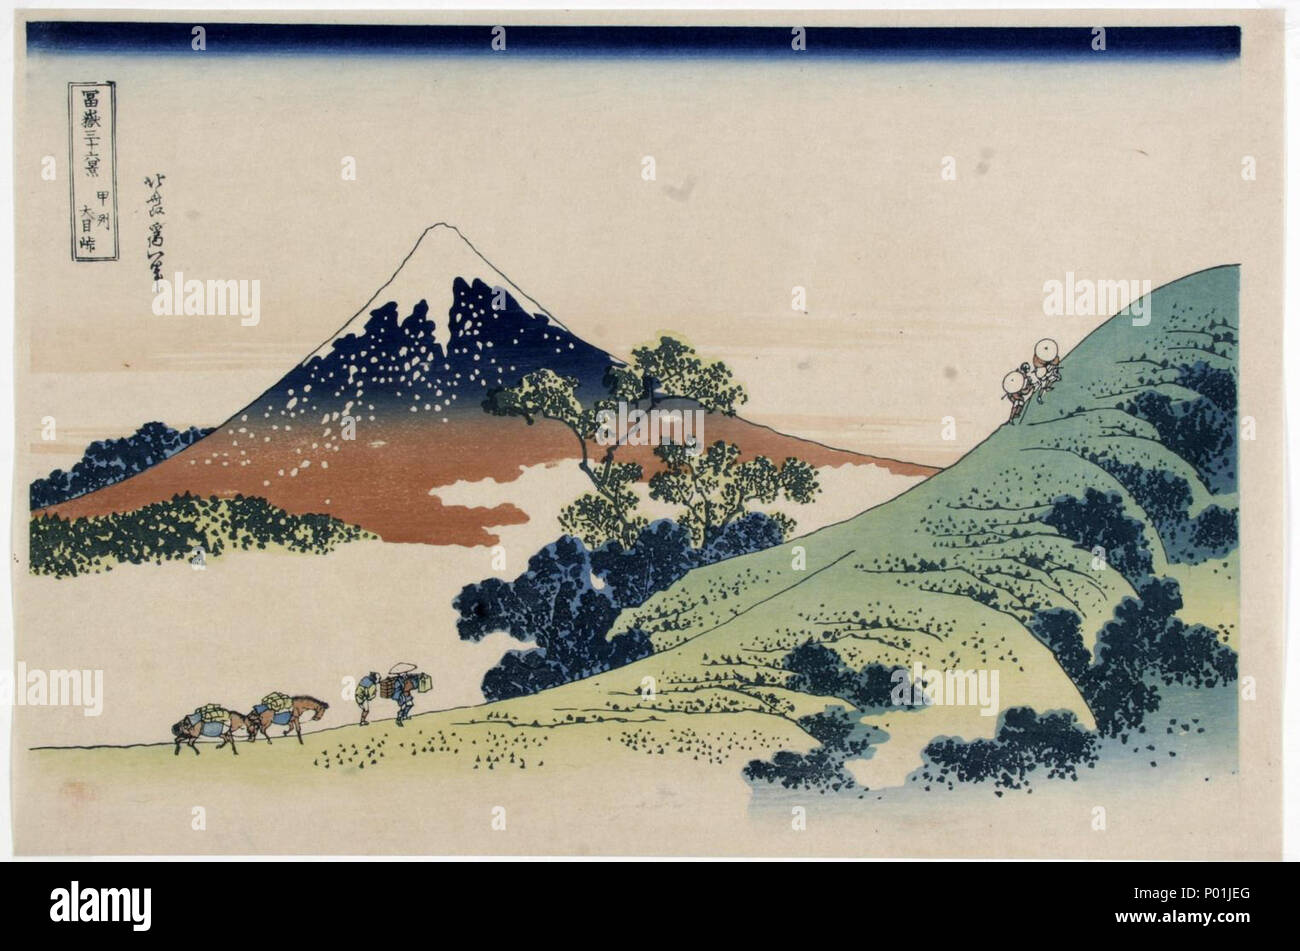 . Englisch: Katsushika Hokusai (1760-1849), Inume Mountain Pass (1829-1833). Sammlung japanischer Drucke von Centre Céramique, Maastricht, Niederlande. 25. November 2014. Katsushika Hokusai (1760-1849) 13 Katsushika Hokusai (1760-1849), De Inume-pas (1829-33) Stockfoto